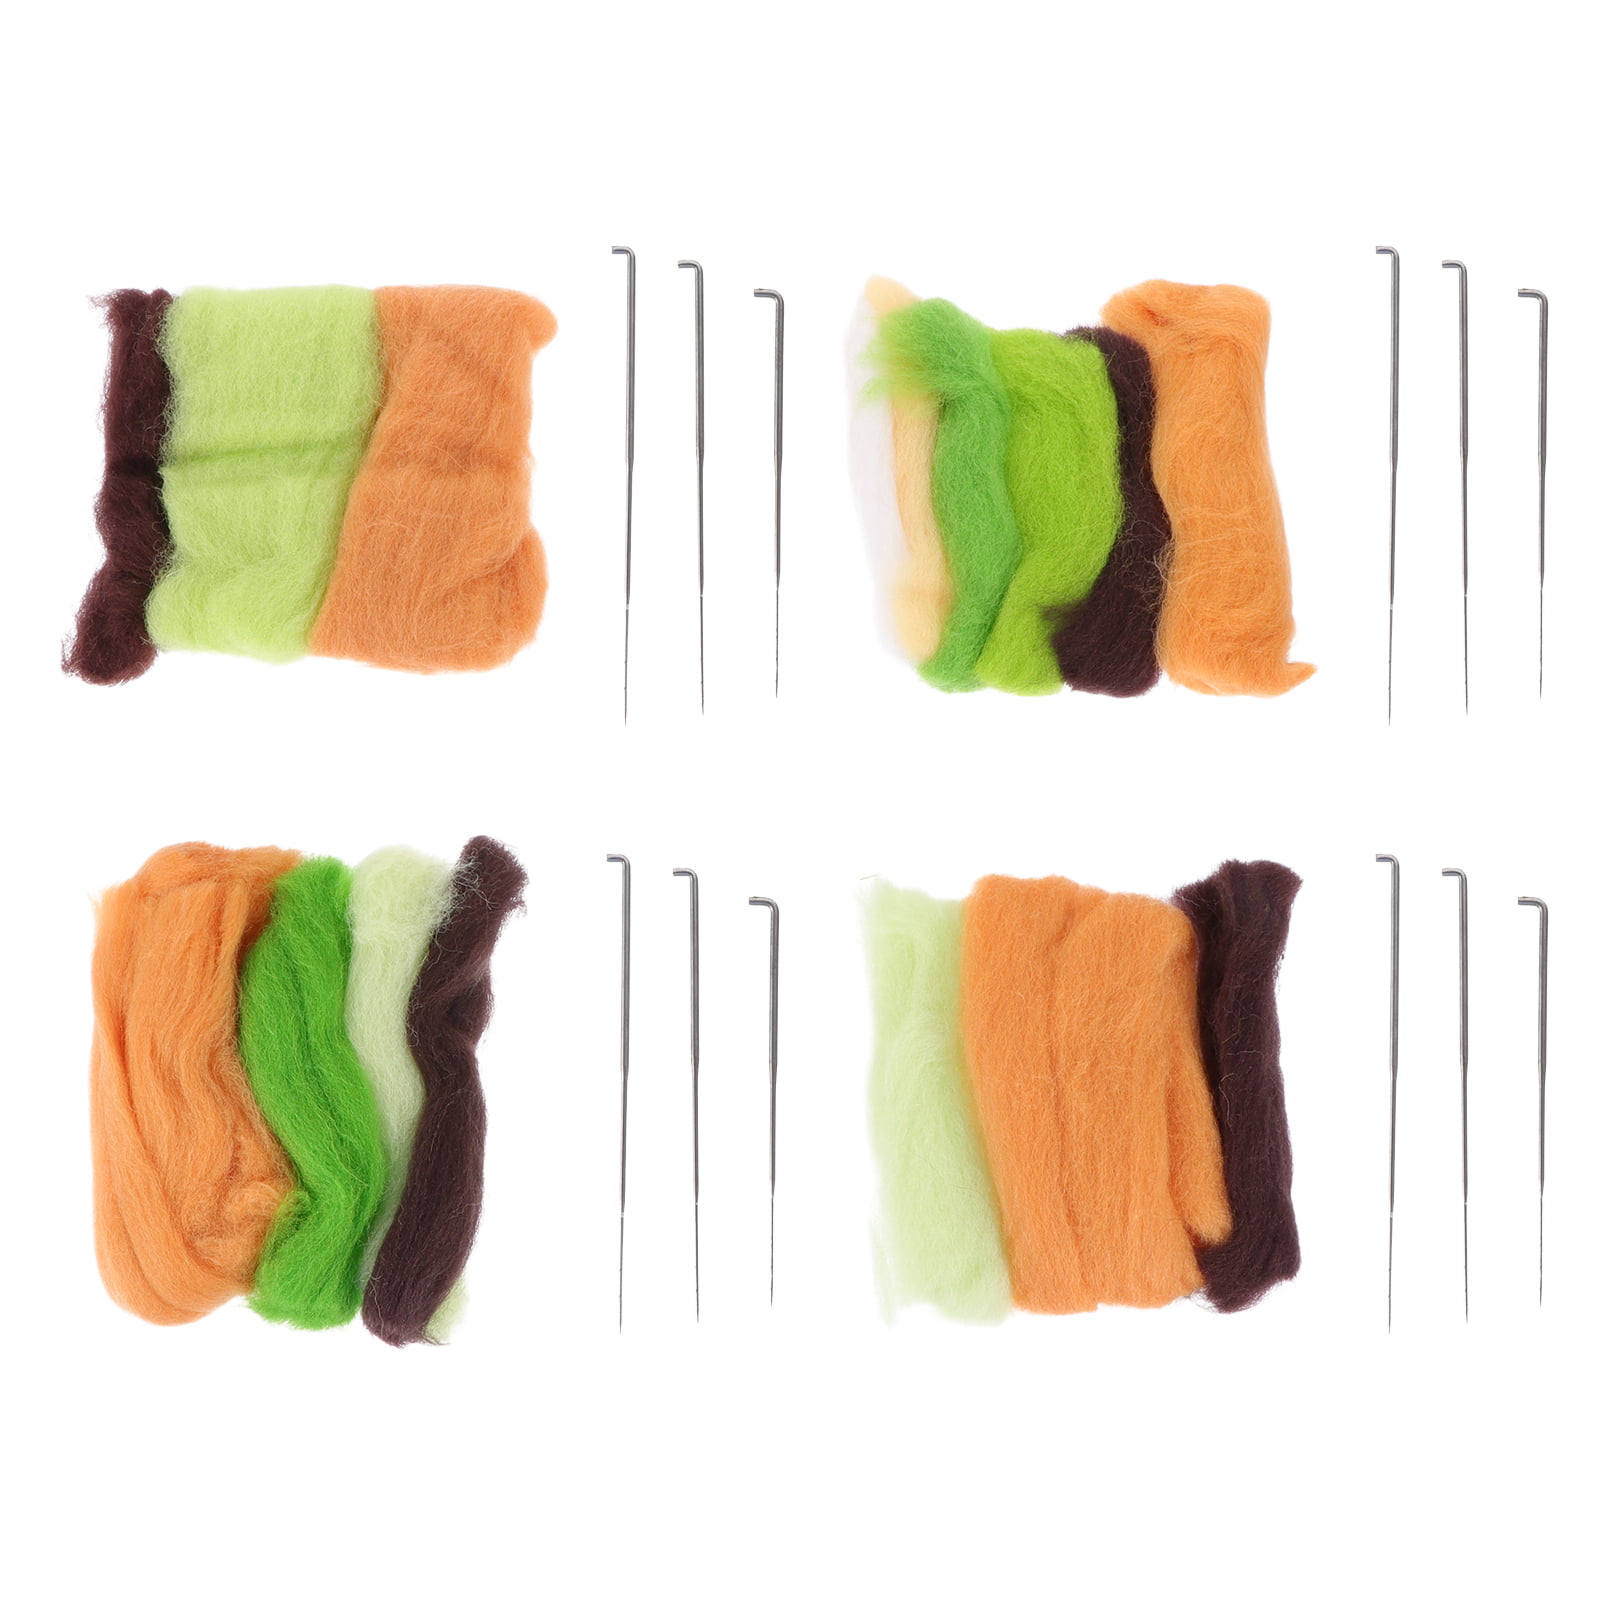 UOOU Needle Felting Kit for Beginners Needle Felting Starter Kit with 6 Pcs Colorful Needle Felting Needles and Instructions Wool Felting Supplies for